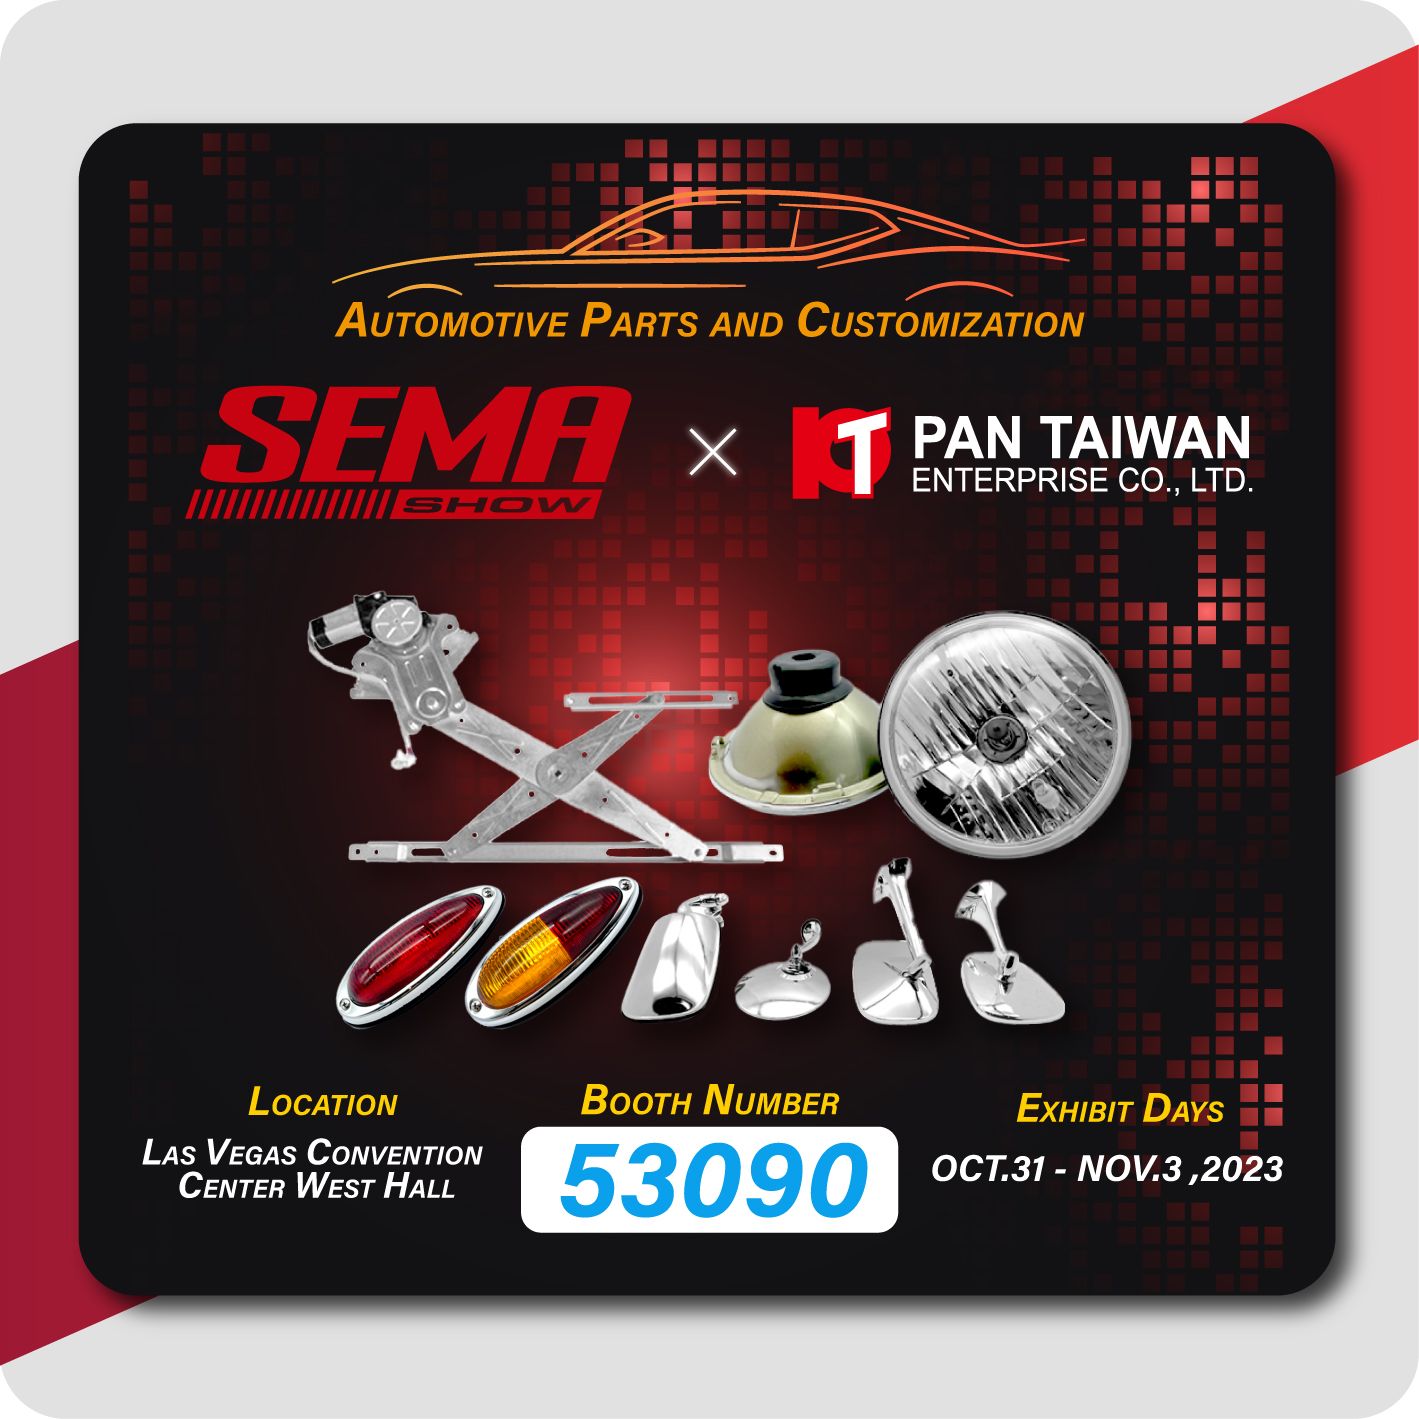 'PAN TAIWAN' deltager i SEMA 2023 og demonstrerer vores vinduesregulator, klassiske reservedele til biler og skræddersyede service til både auto- og elektriske hybridbiler til alle vores kunder.